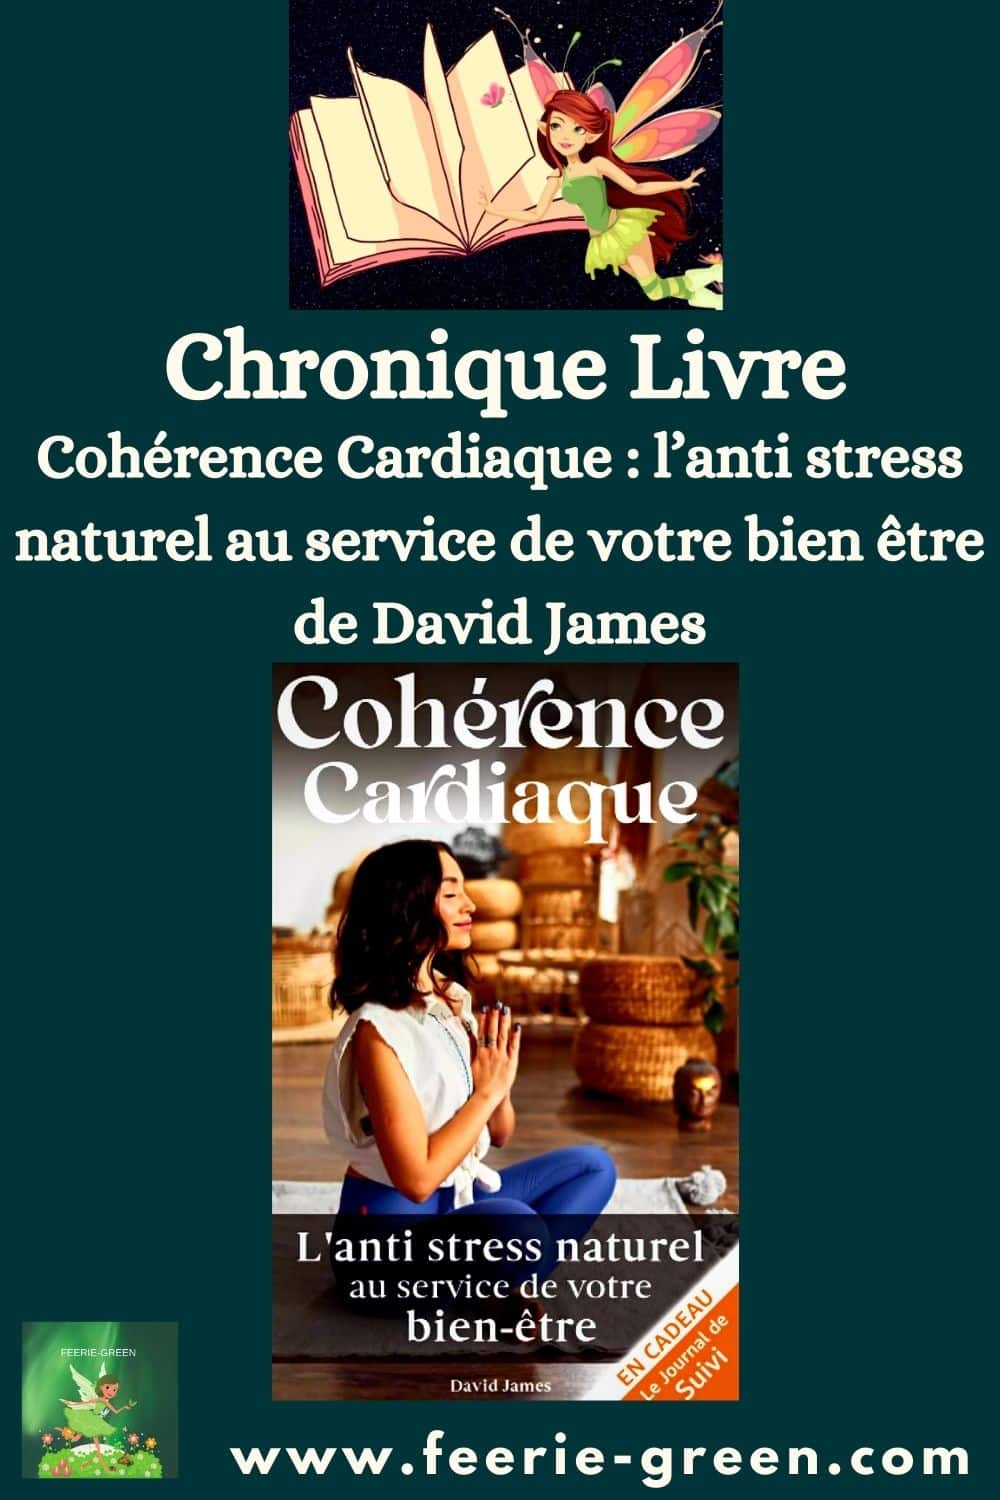 Cohérence Cardiaque l’anti stress naturel au service de votre bien être de David James - pinterest